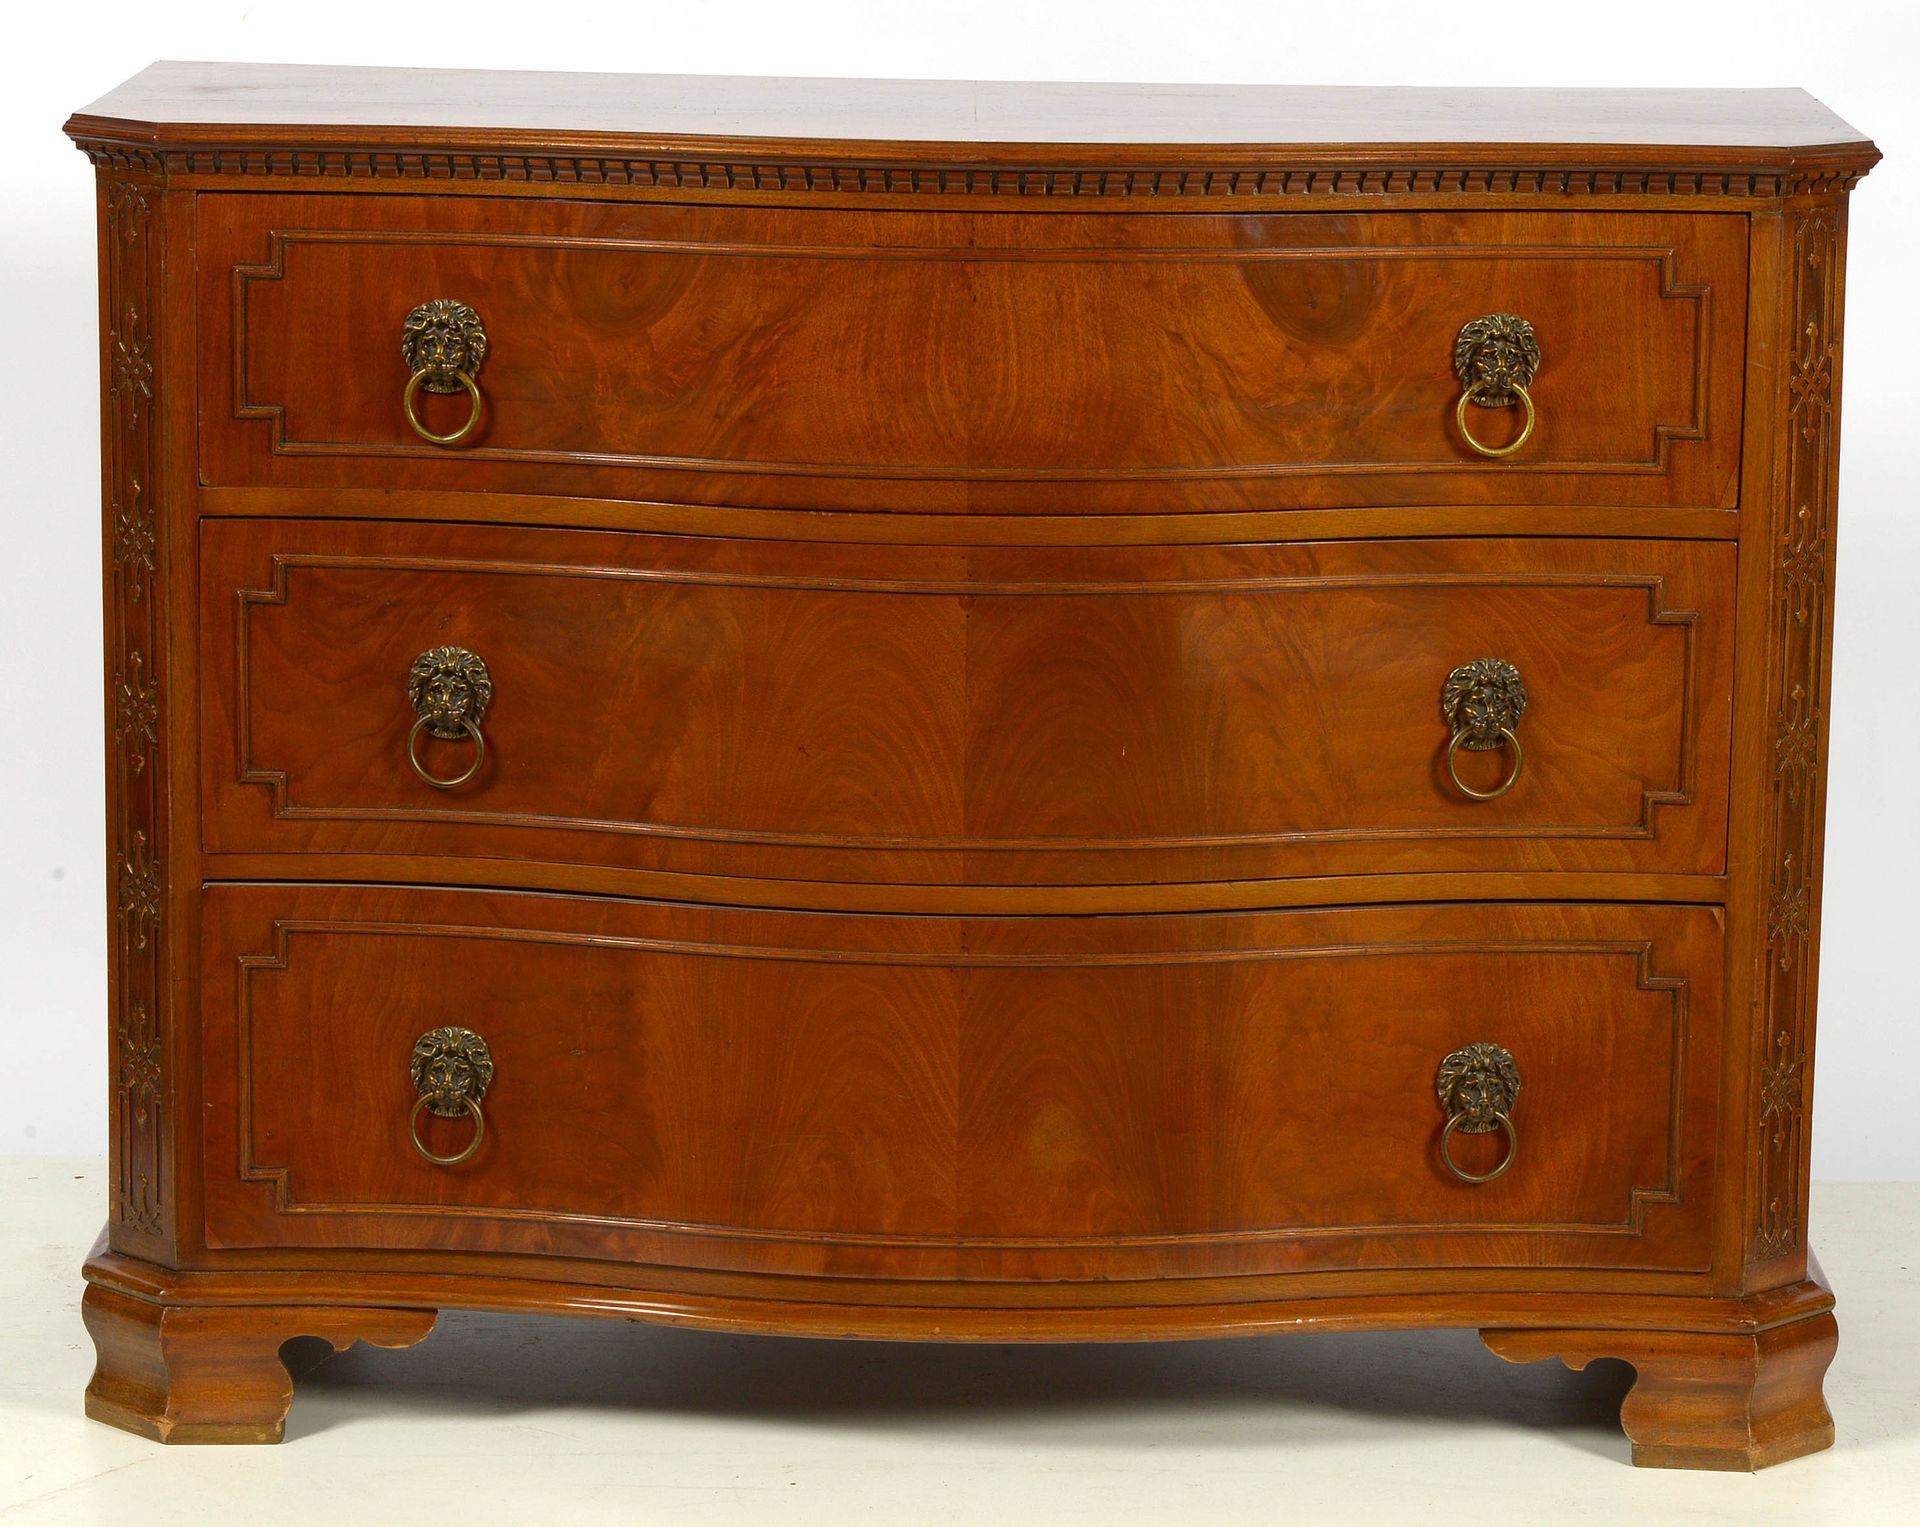 Null 桃花心木抽屉柜，开有三个弧形抽屉。镀金铜饰，有 "狮子 "装饰。英文作品。年代：十九世纪（侧面有裂纹）。尺寸：+/-125x94x56厘米。